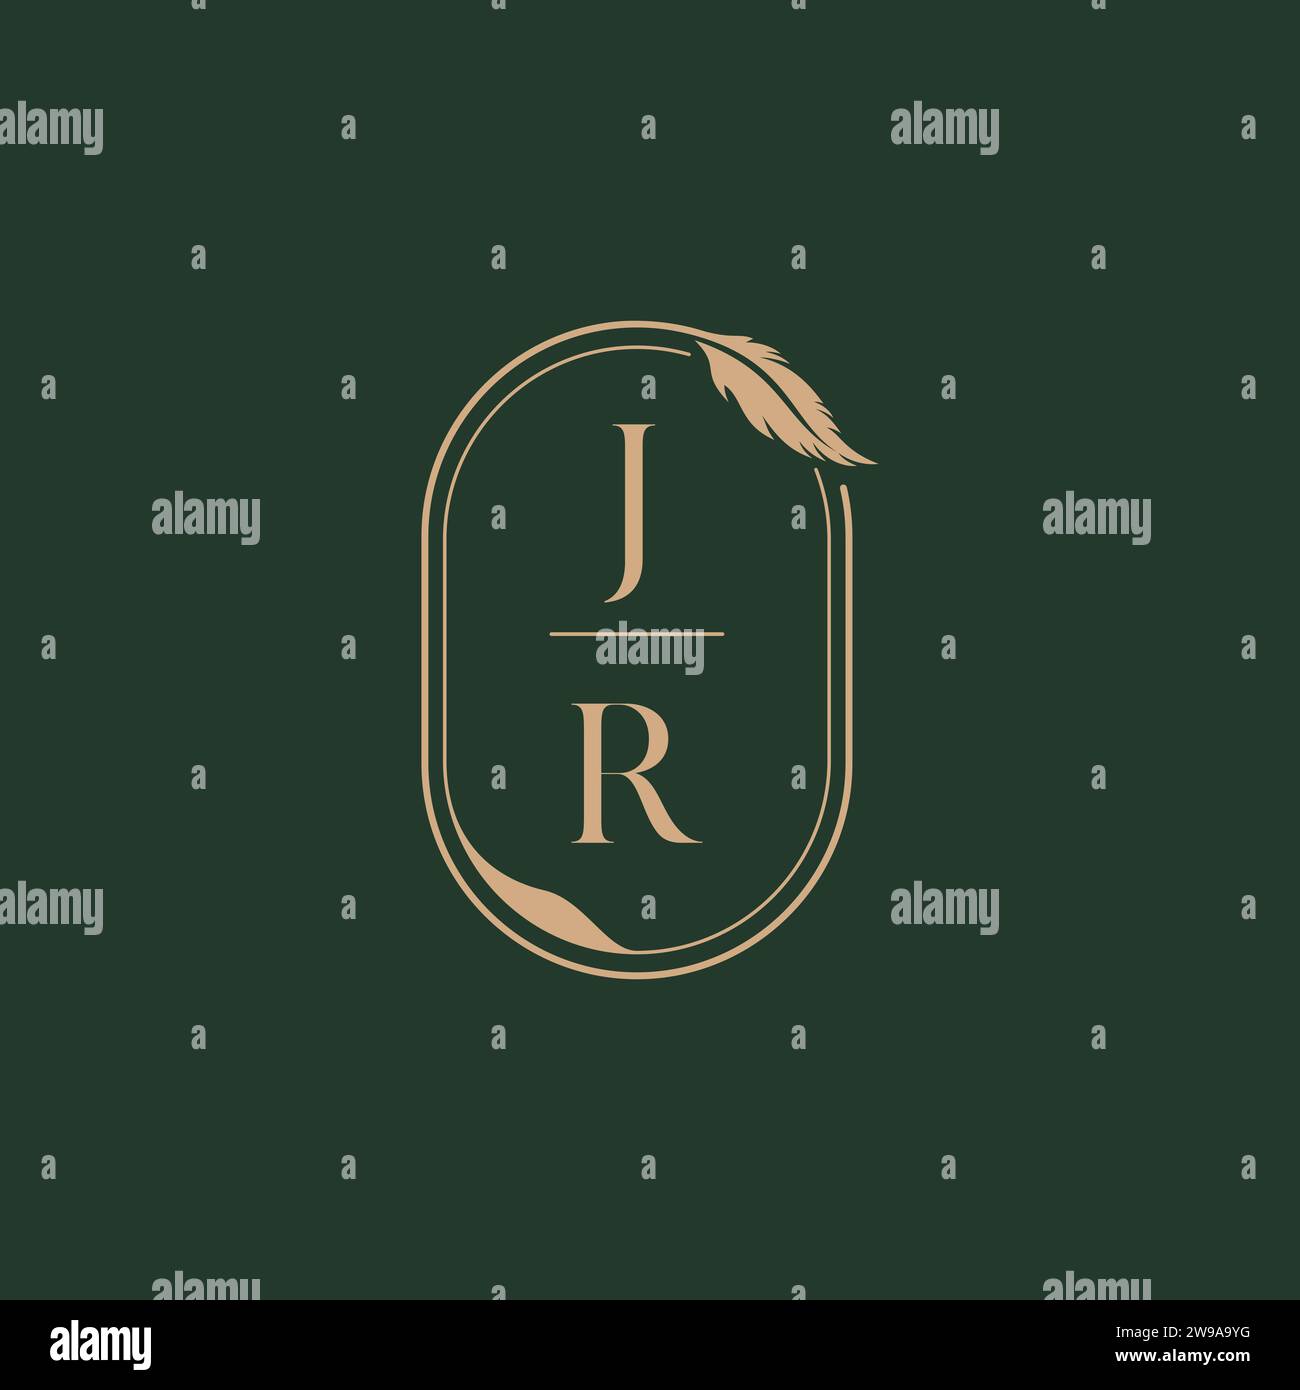 JR feather concept wedding monogram logo design ideas as inspiration Stock Vector